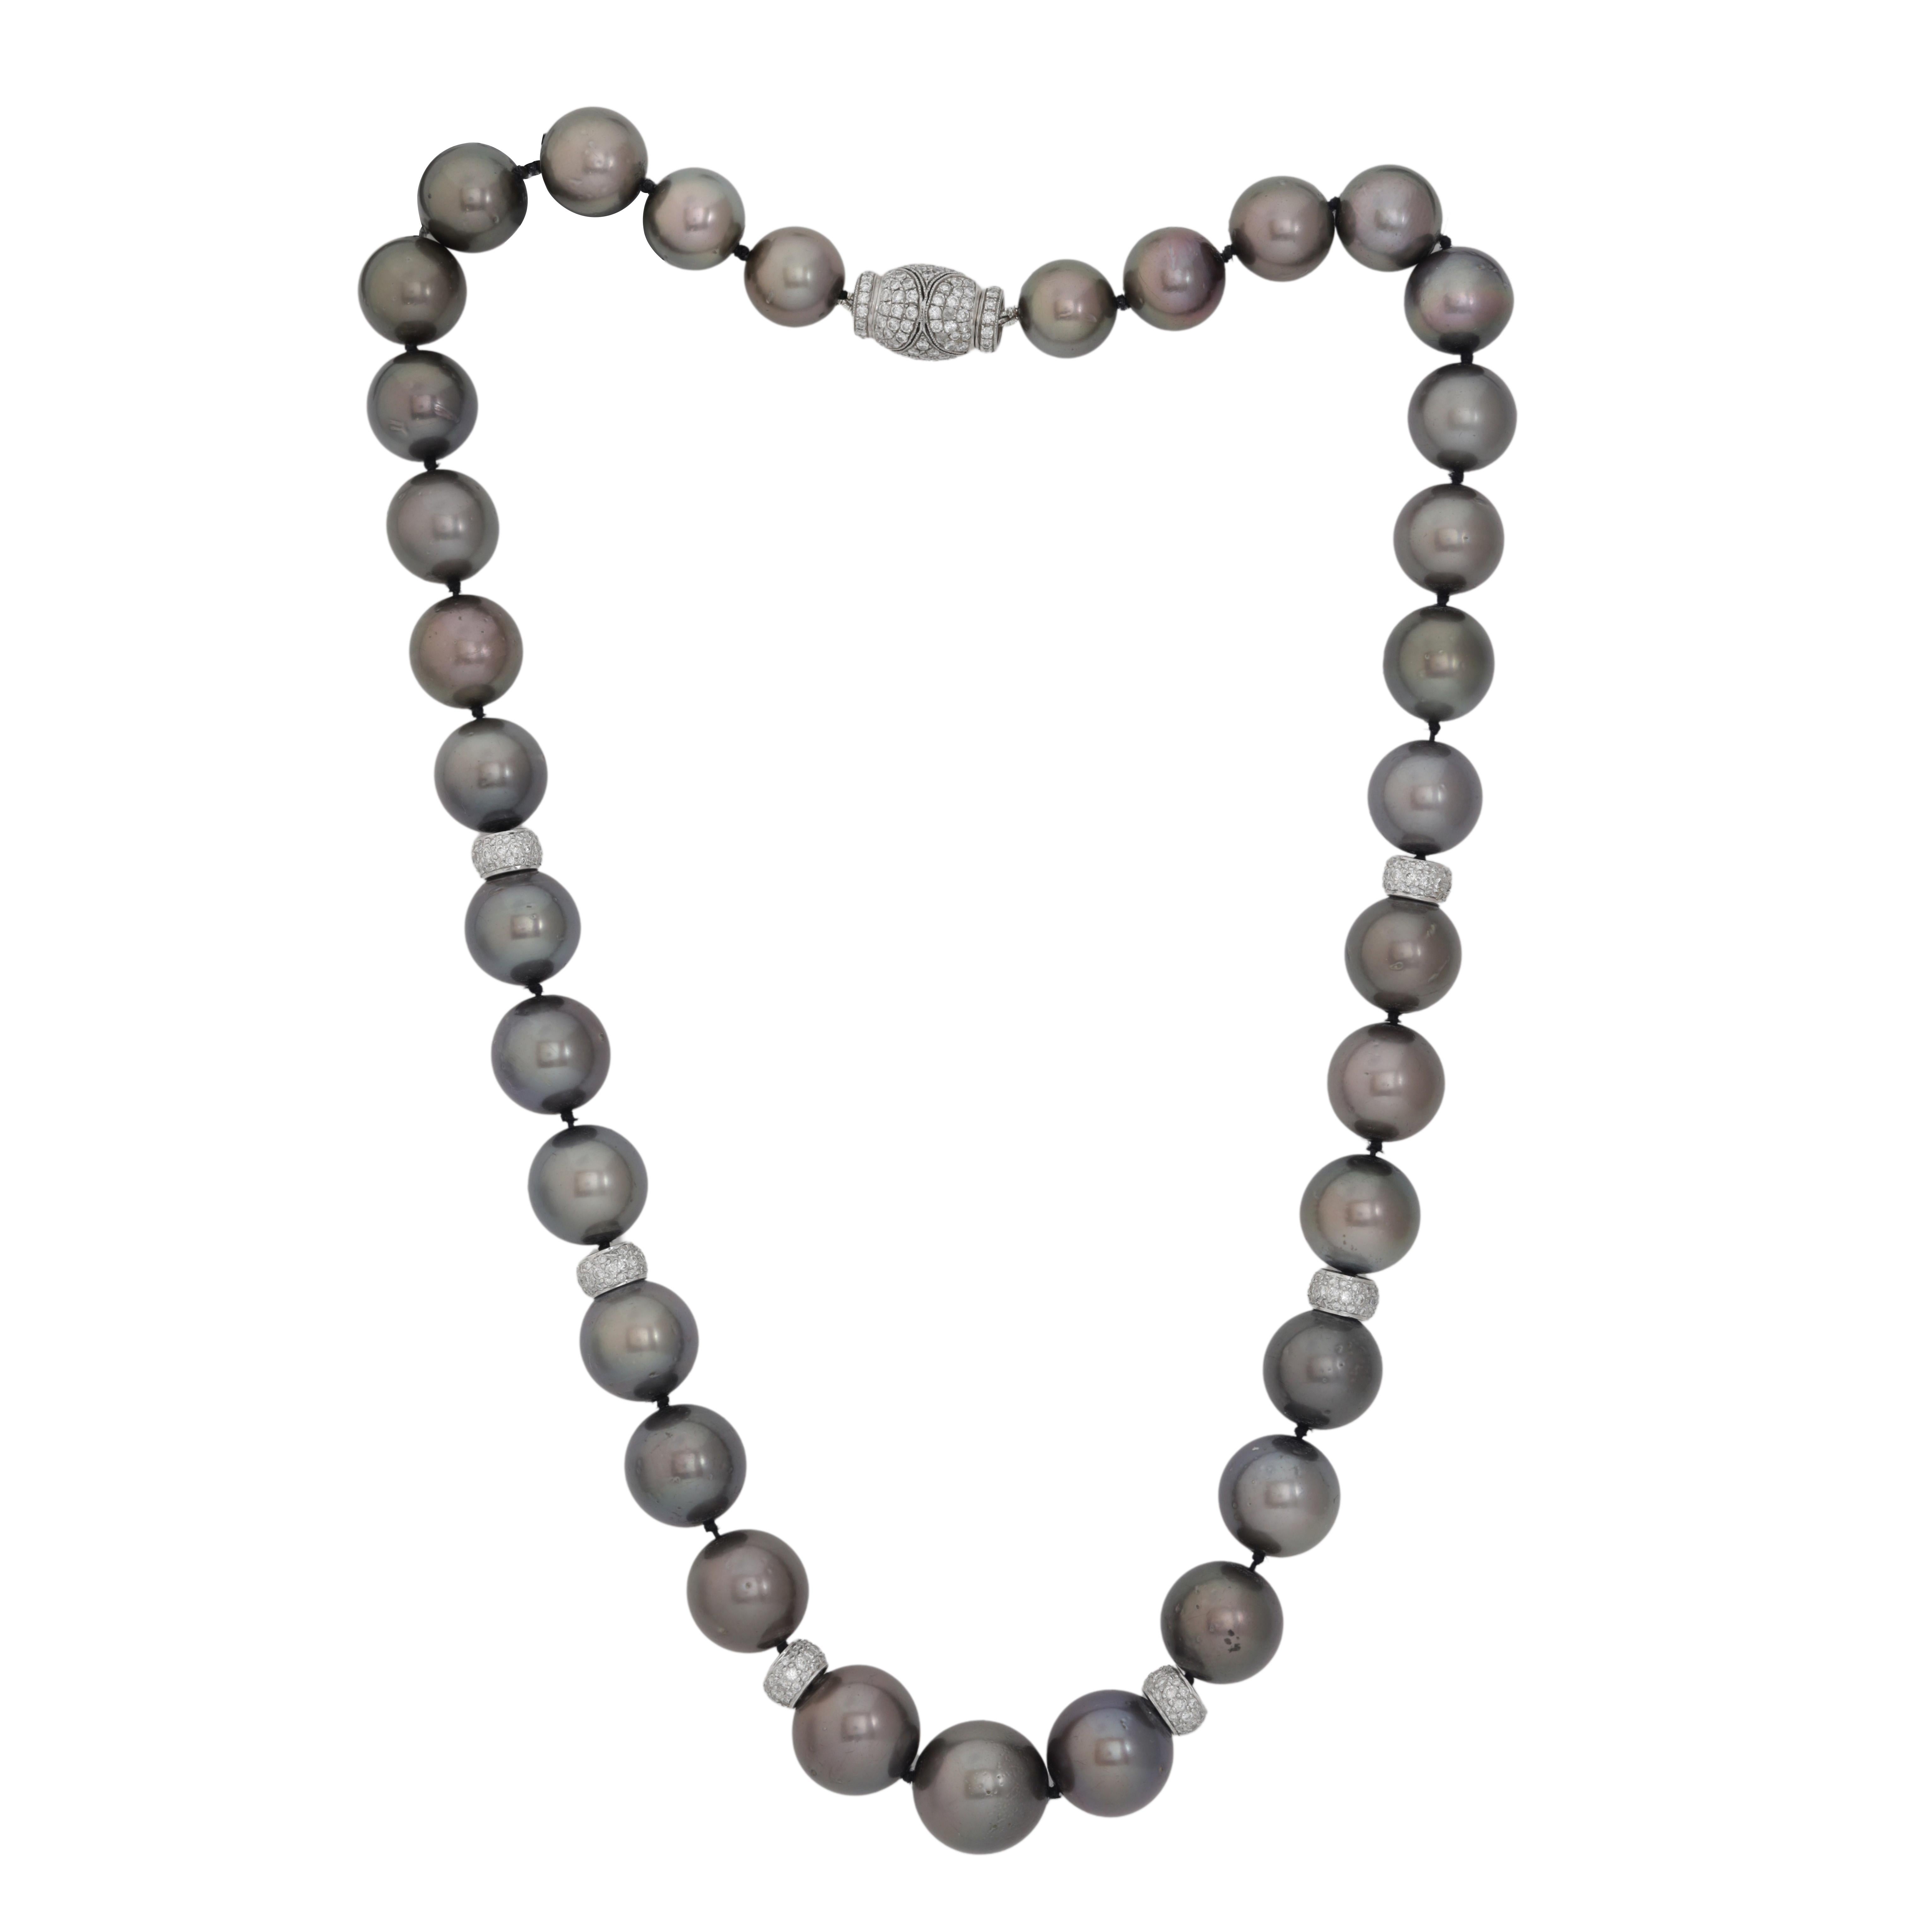 Collier de diamants et de perles orné de perles du sud de Tahiti de 11-14 mm et de rondelles contenant 1,90 cts tw de diamants ronds micropavés.
A&M est un fournisseur de premier plan de bijoux fins de qualité supérieure depuis plus de 35 ans.
Diana